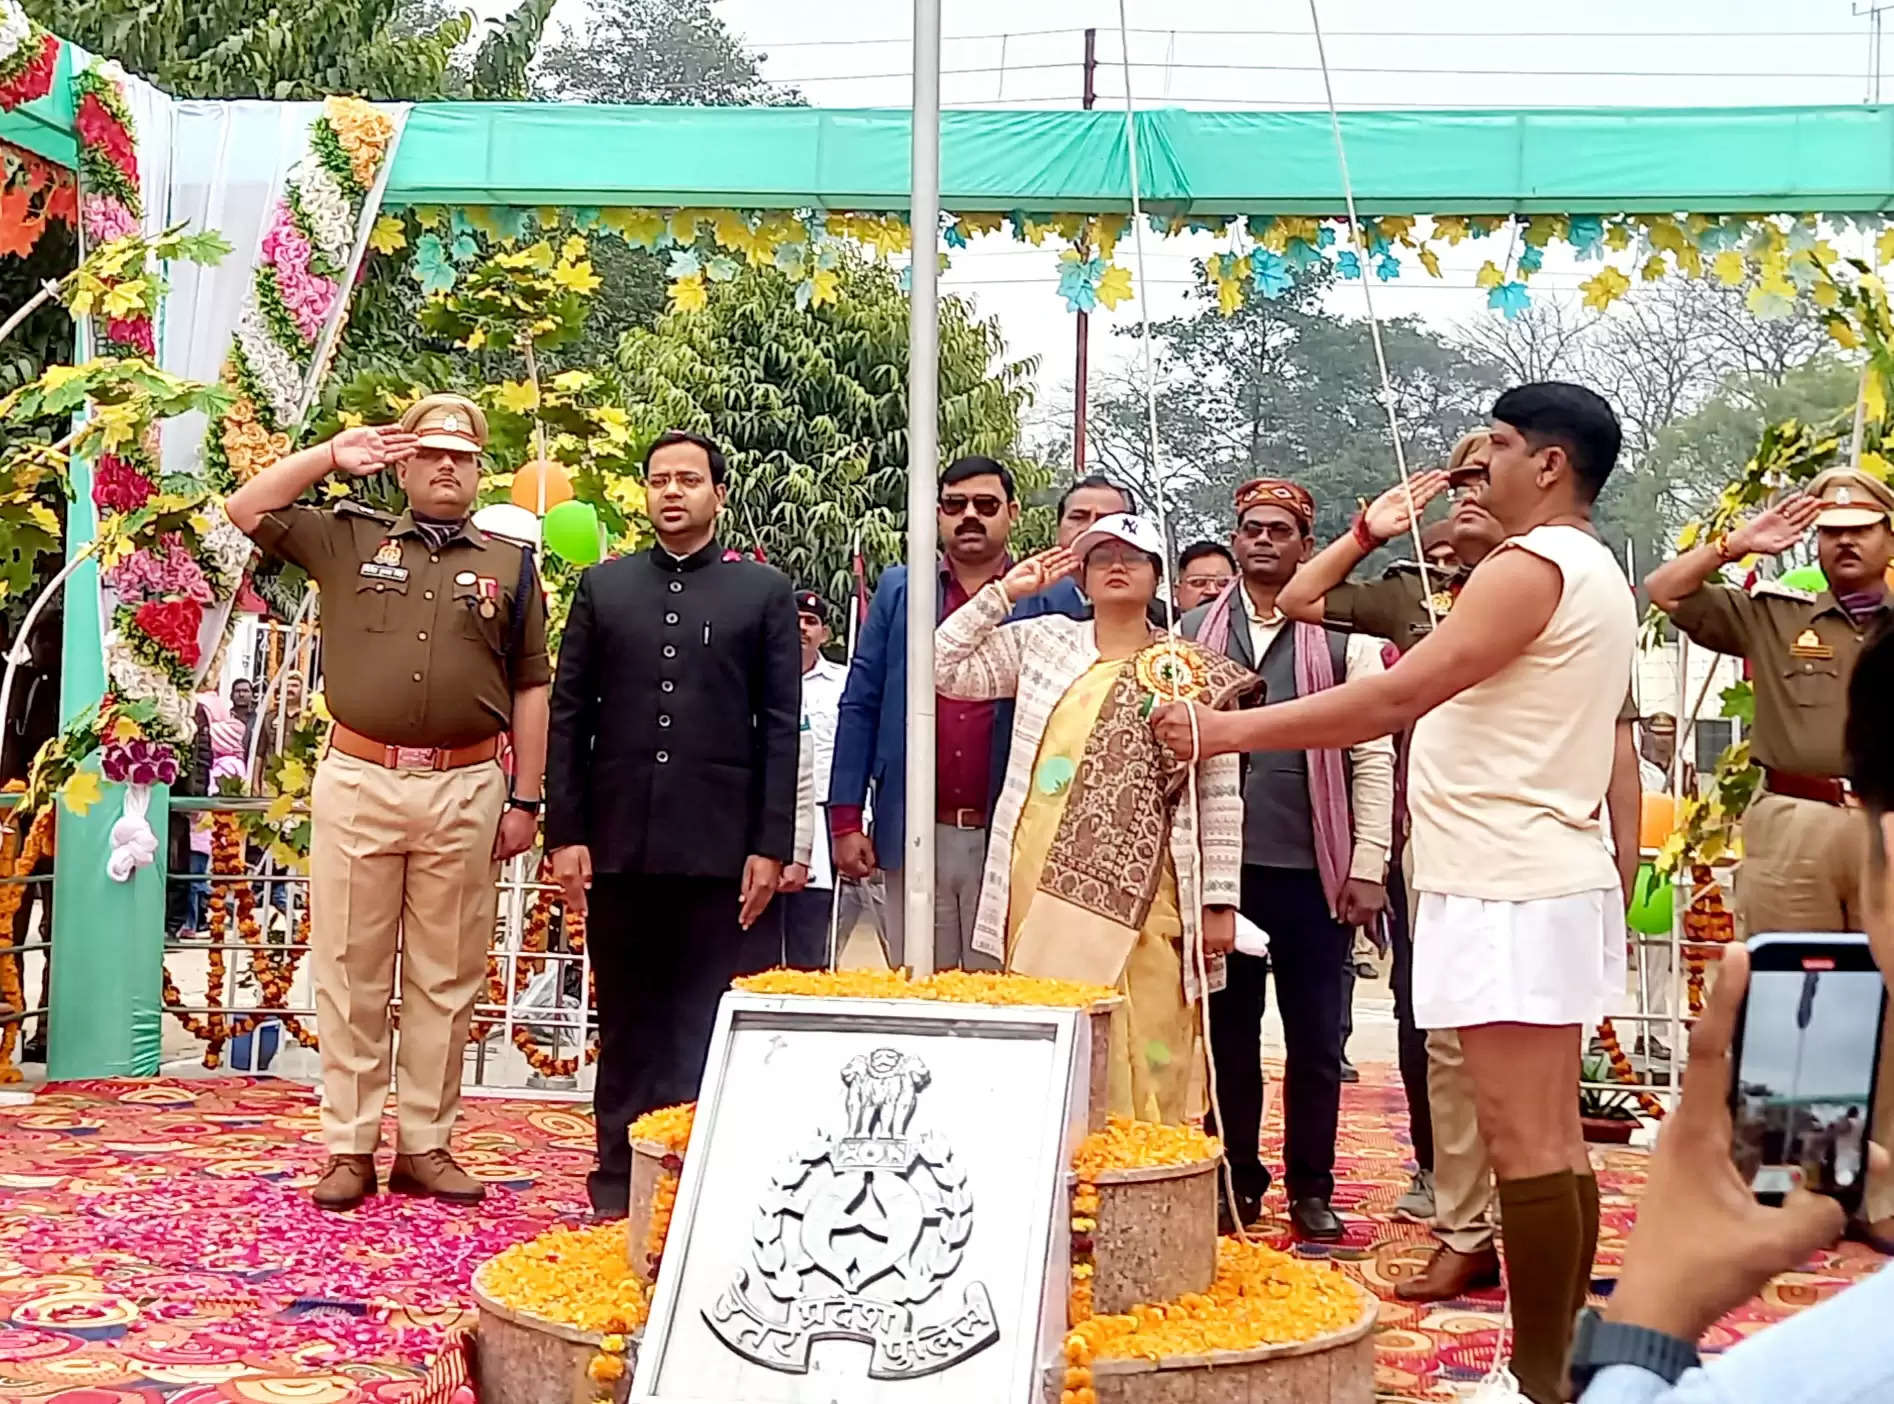  कुशीनगर में राज्य मंत्री विजयलक्ष्मी ने फहराया तिरंगा, परेड की ली सलामी